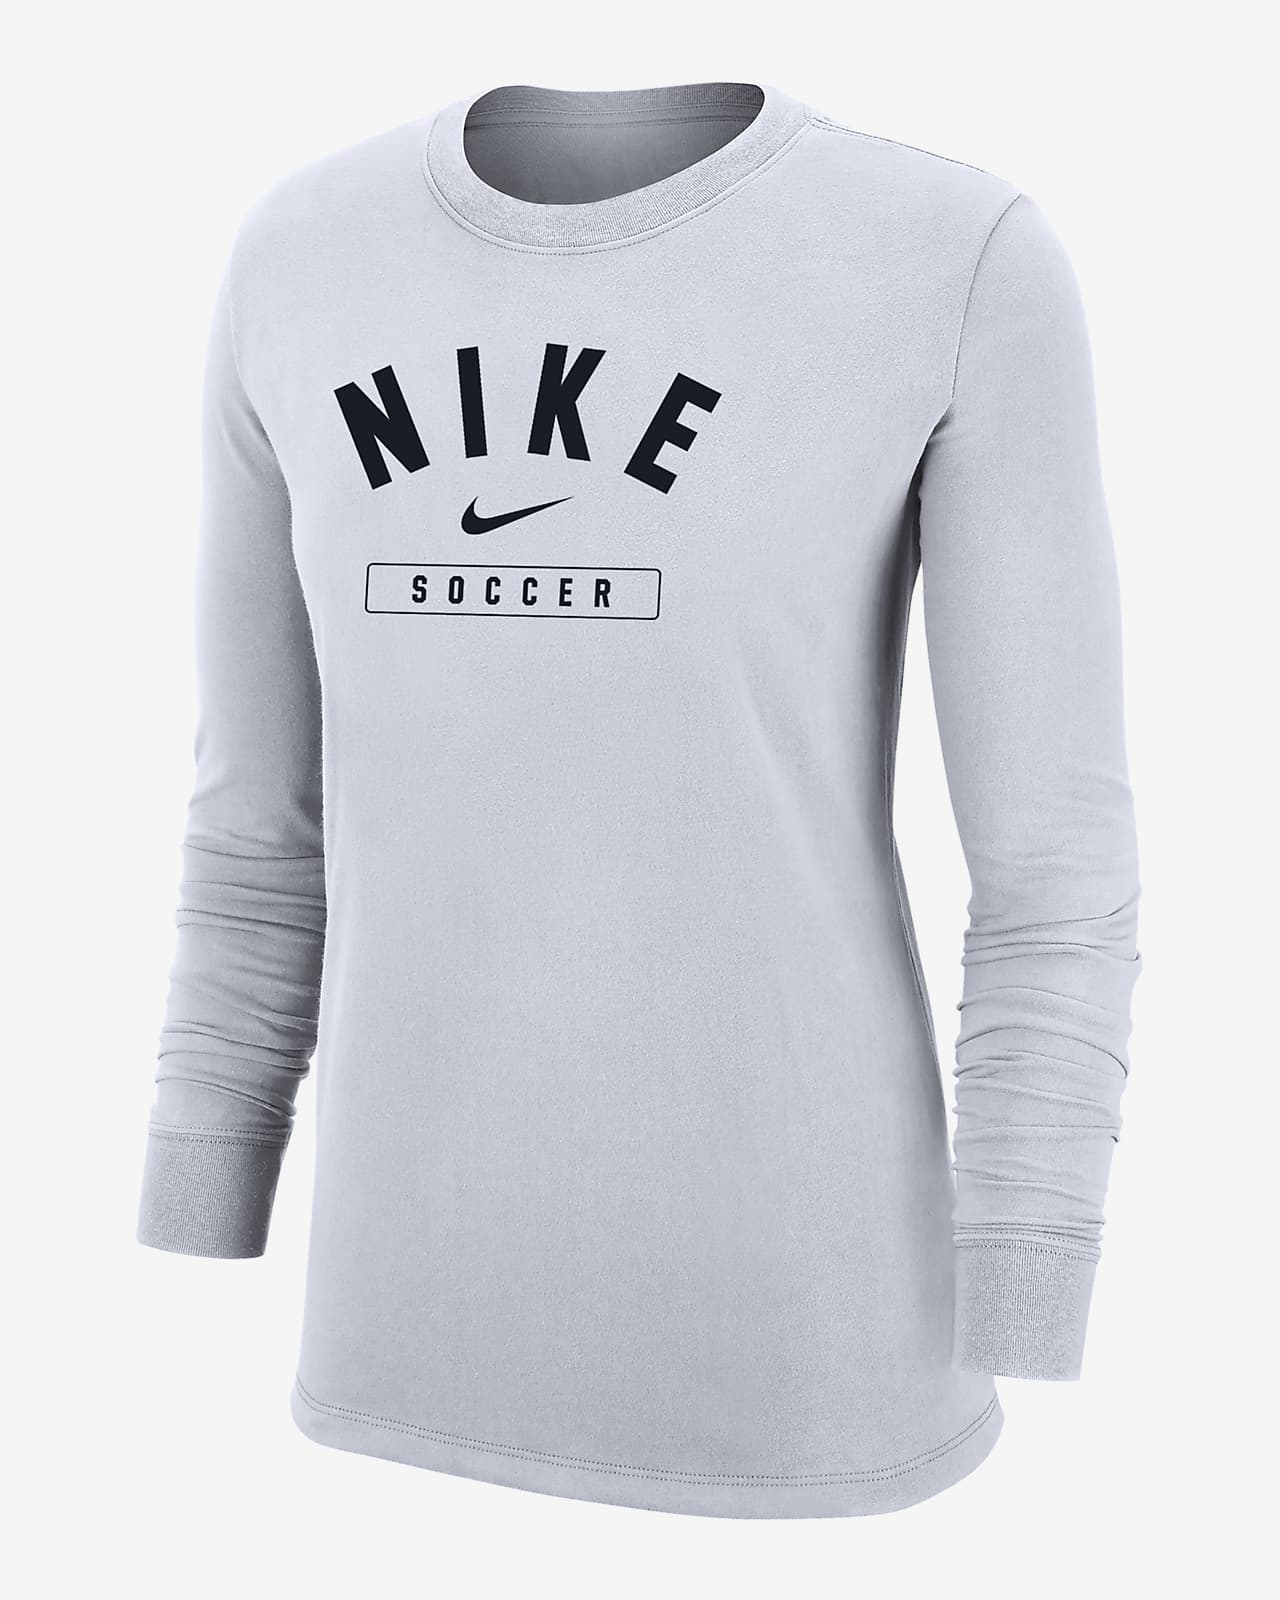 Nike Swoosh Women's Soccer Long-Sleeve T-Shirt